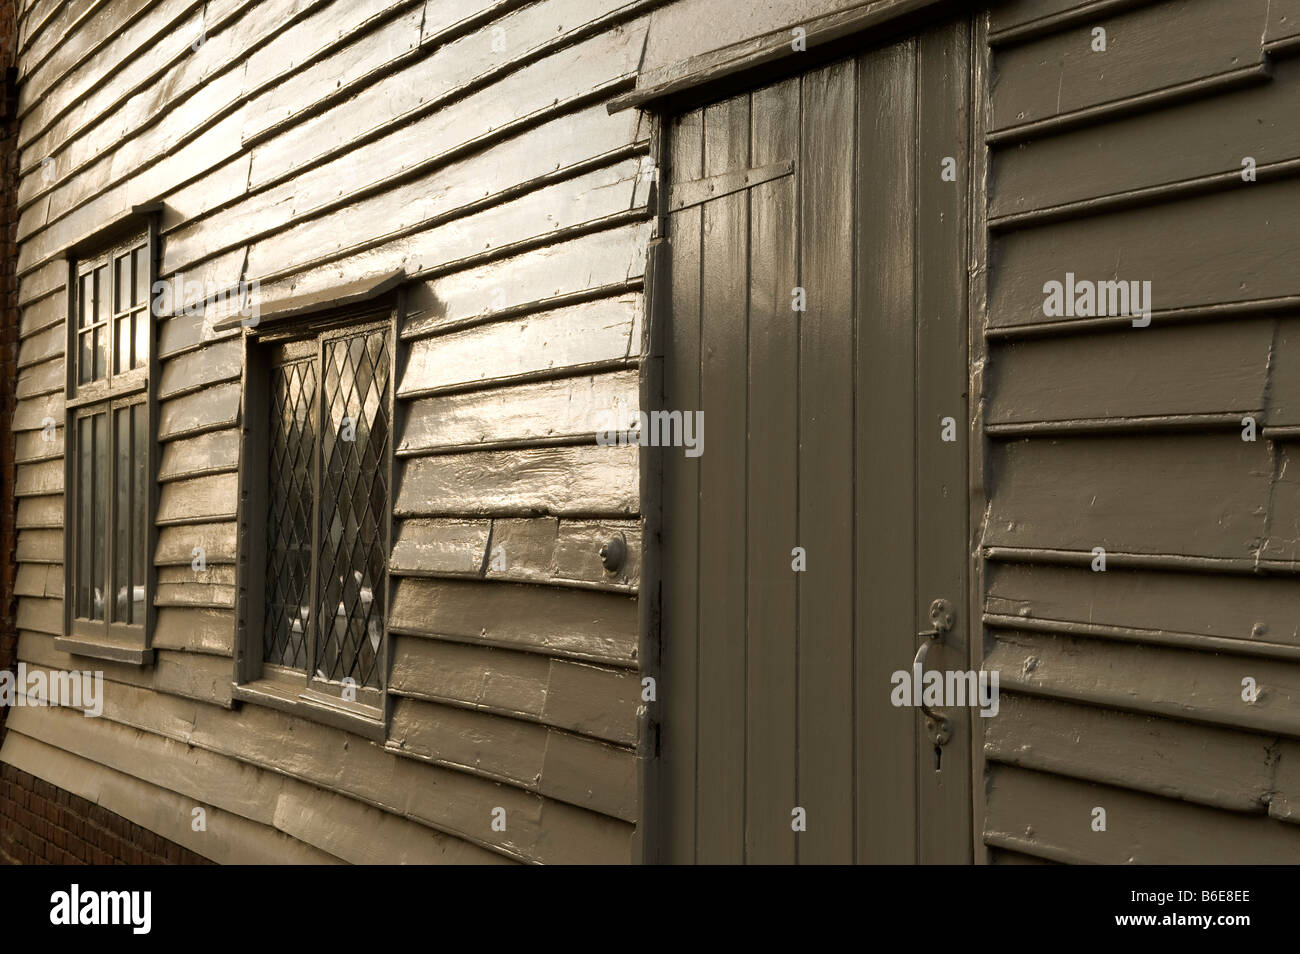 A doghe di legno edificio shot contra-jour Foto Stock